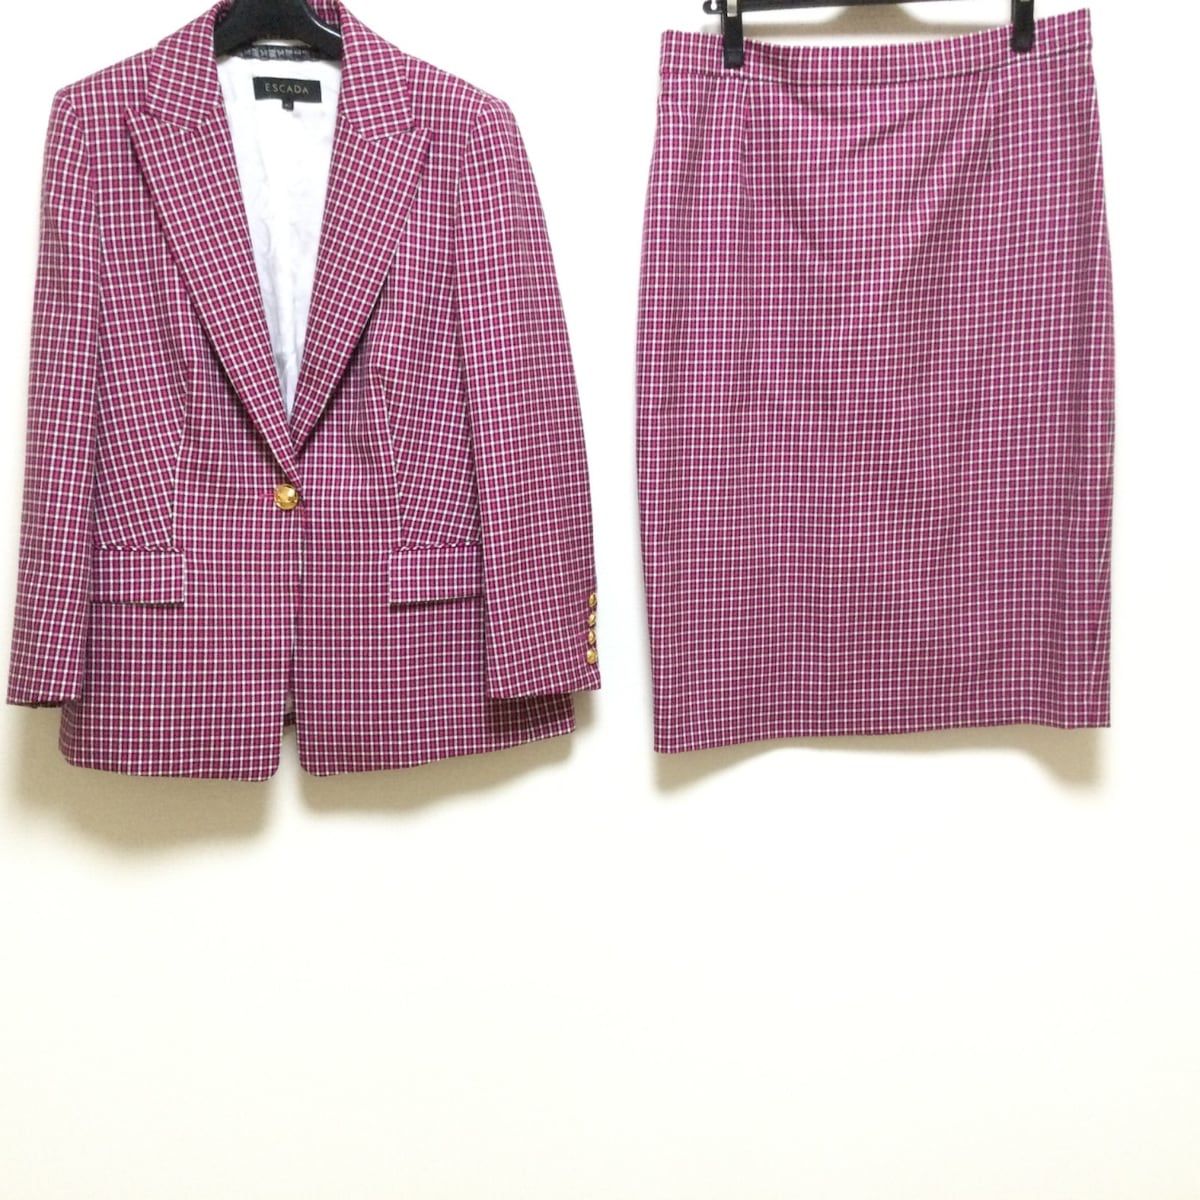 ESCADA(エスカーダ) スカートスーツ レディース - ピンク×黒×白